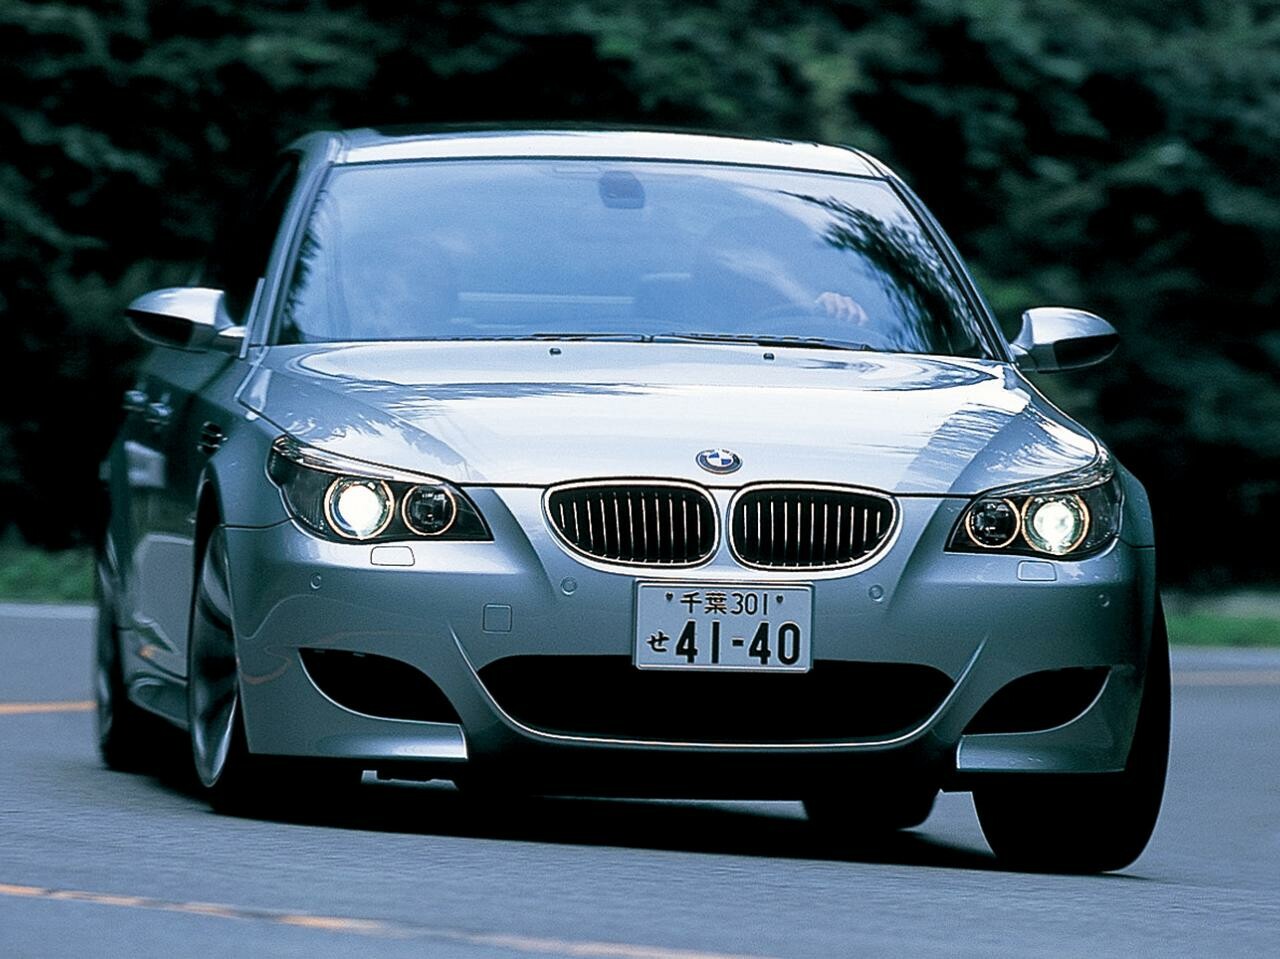 【ヒットの法則90】E60型BMW M5のスポーツ度をメルセデスE55 AMG、ポルシェ911カレラSと比較